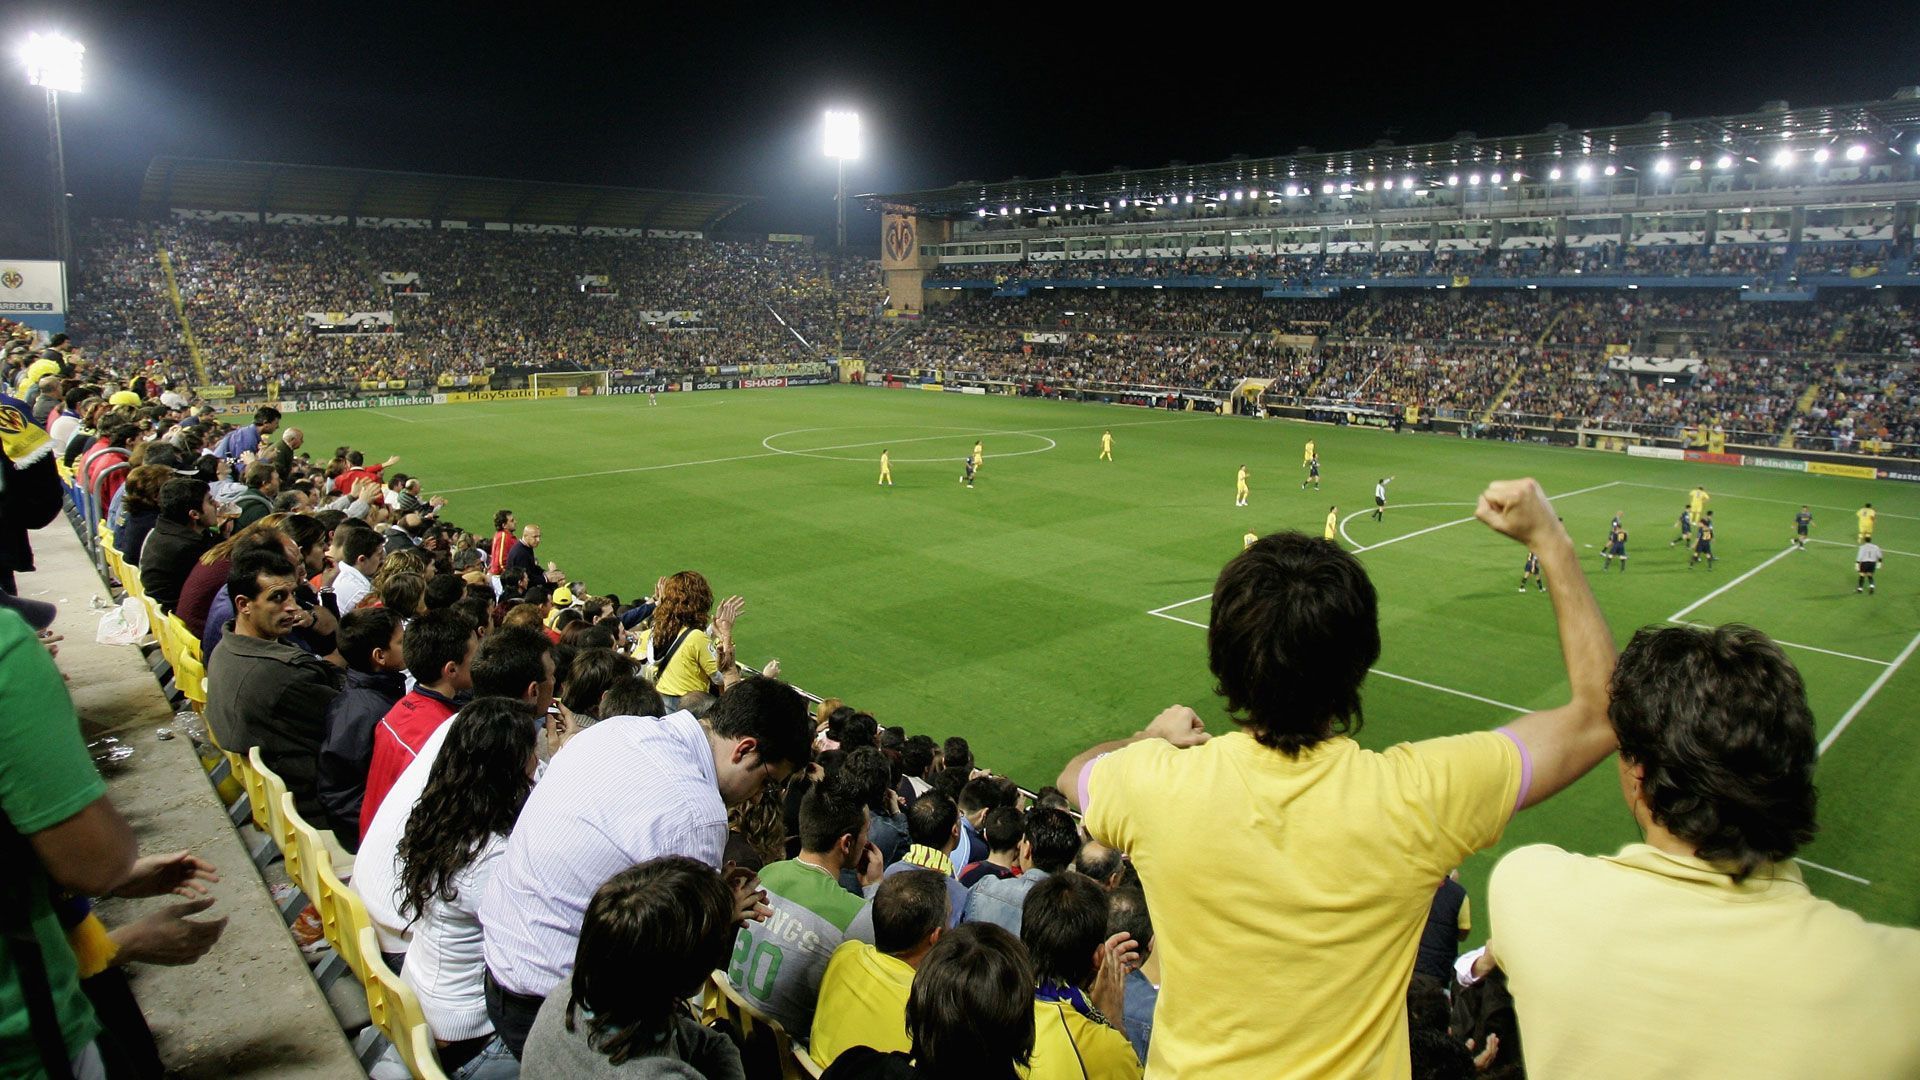 
                <strong>Stadion: Estadio de la Ceramica</strong><br>
                Das Estadio de la Ceramica dient seit 1923 als Heimspielstätte des FC Villarreal. Es bietet "nur" 23.500 Zuschauern Platz. Bezogen auf die Einwohnerzahl ist das jedoch eine ganze Menge. Laut offiziellen Angaben leben etwa 50.000 Menschen in Villarreal. Das Stadion war die längste Zeit unter dem vorherigen Namen El Madrigal bekannt.
              